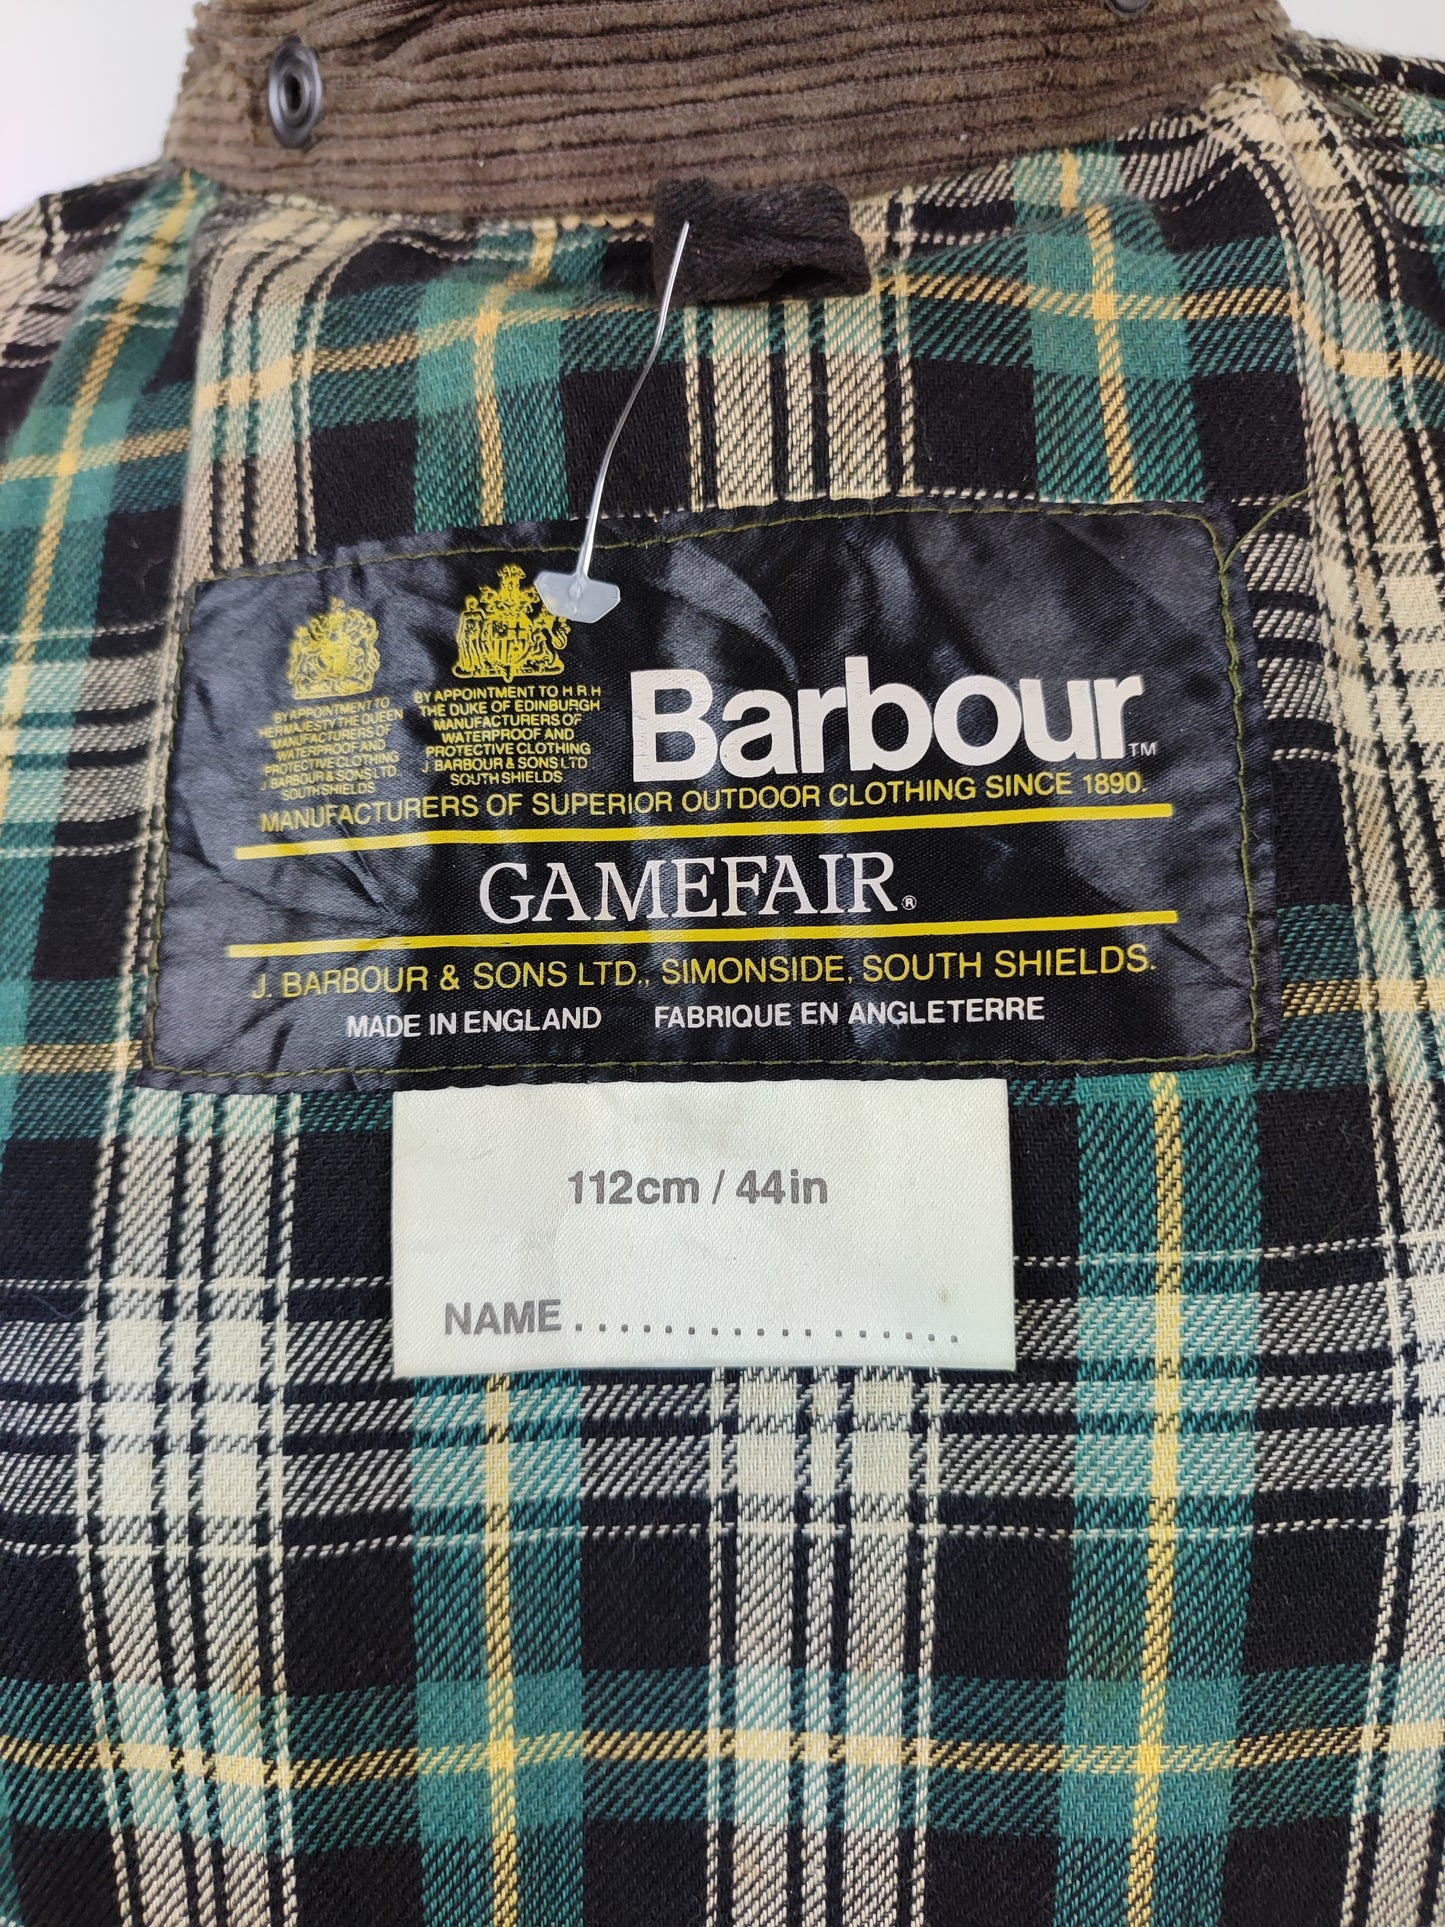 Barbour Gamefair Verde C44/112 cm Green Wax Vintage Gamefair Jacket c44 Large